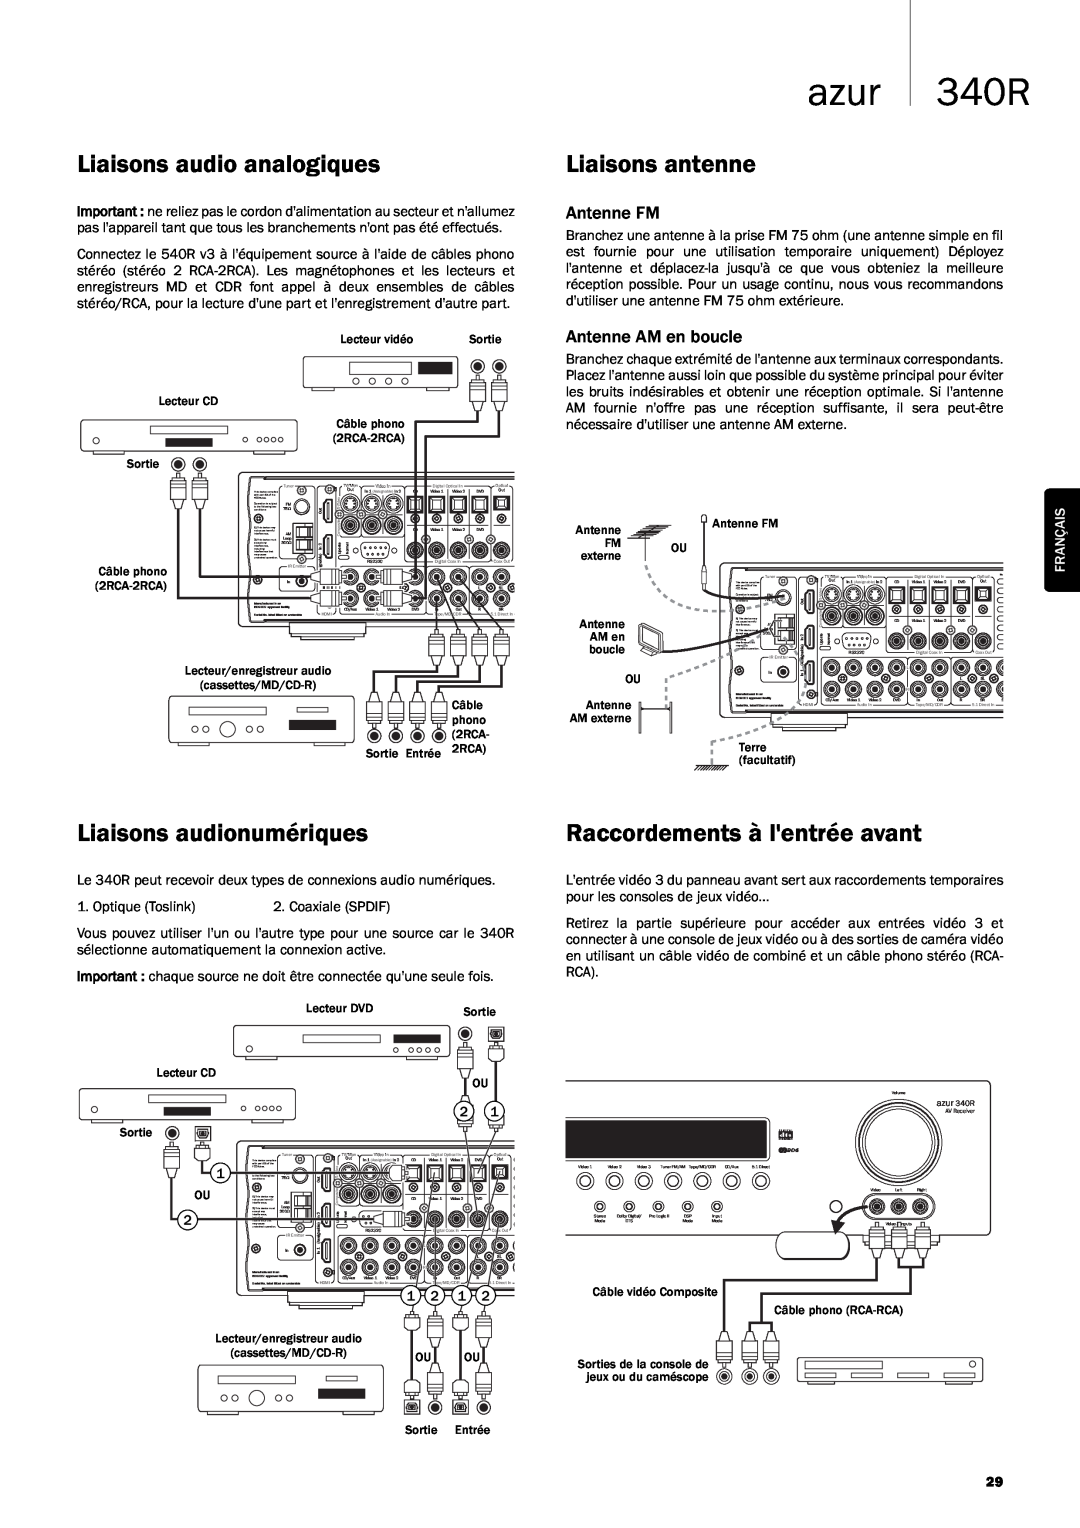 Cambridge Audio 340R Liaisons audio analogiques, Liaisons antenne, Liaisons audionumériques, Raccordements à lentrée avant 